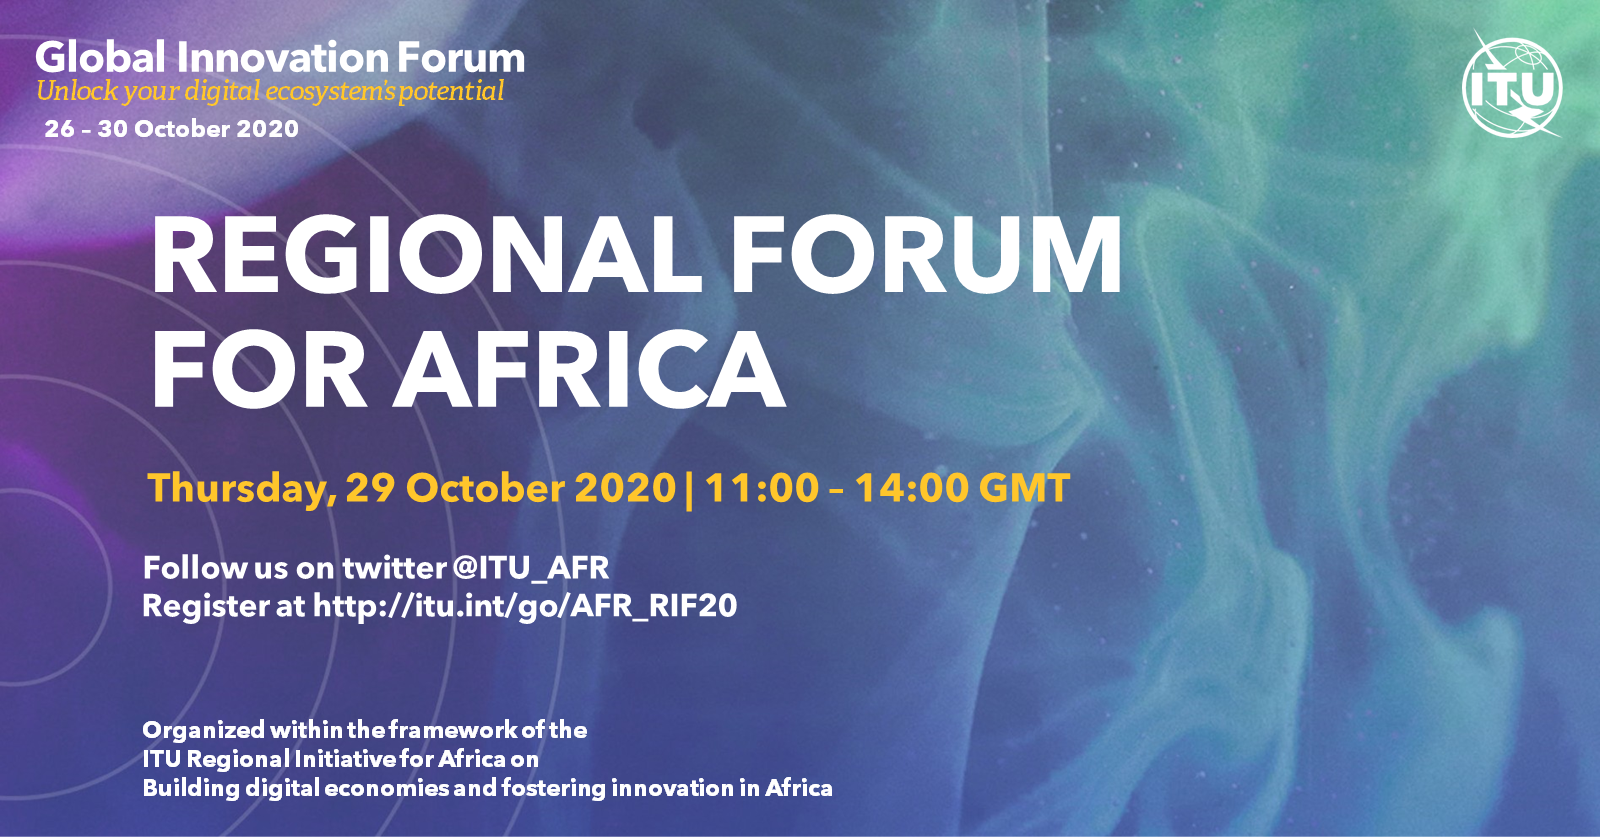 Global Innovation Forum Branding_AFR.png